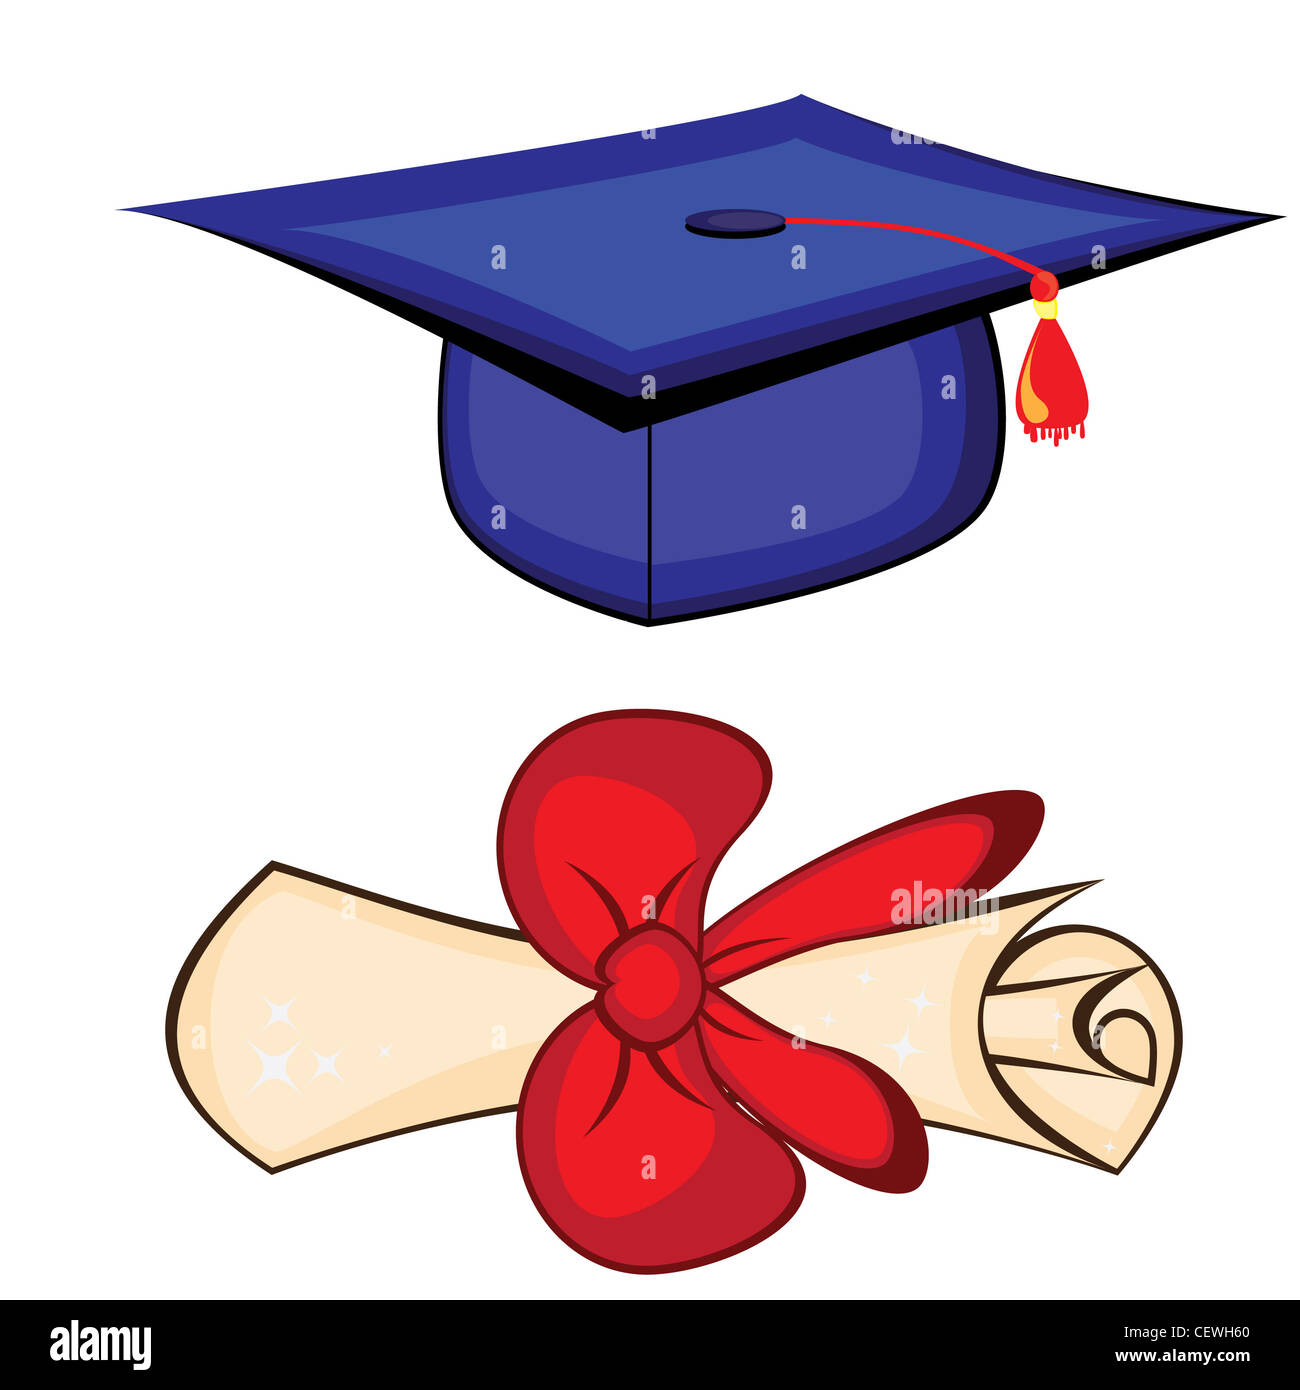 Diploma and graduation cap Stock Photo - Alamy